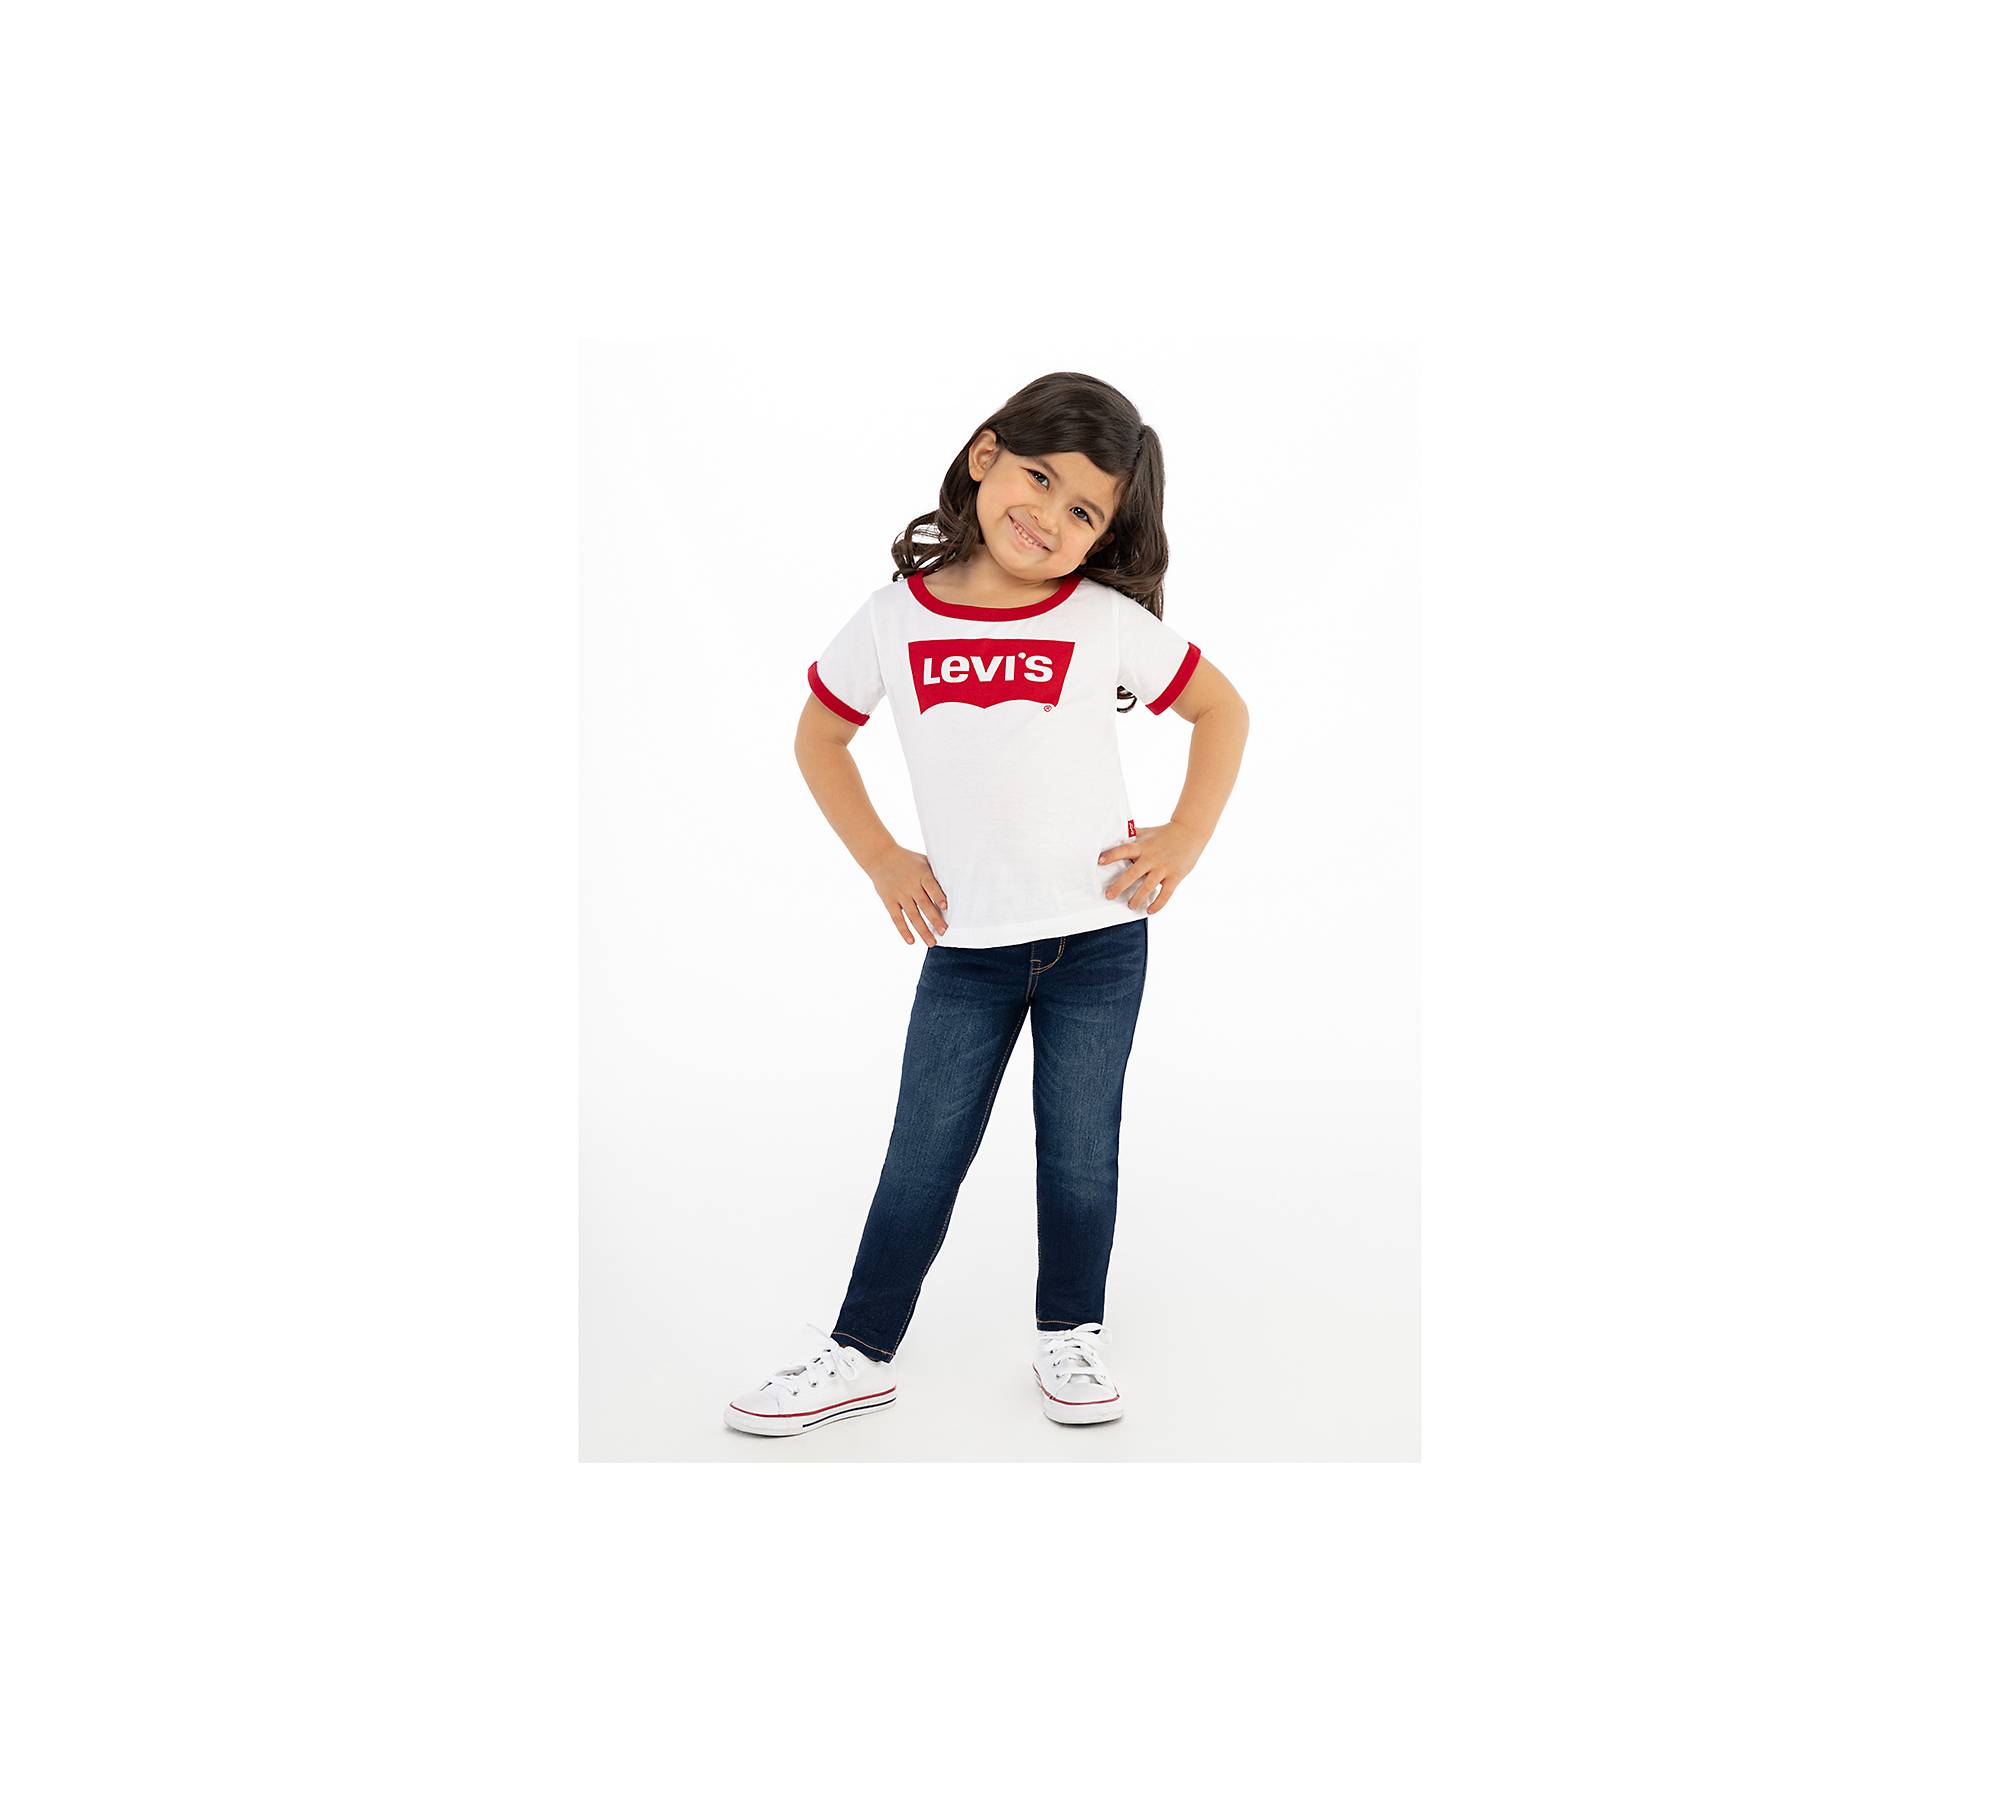 Toddler Girls 2t-4t Retro Ringer Tee Shirt - White | Levi's® US